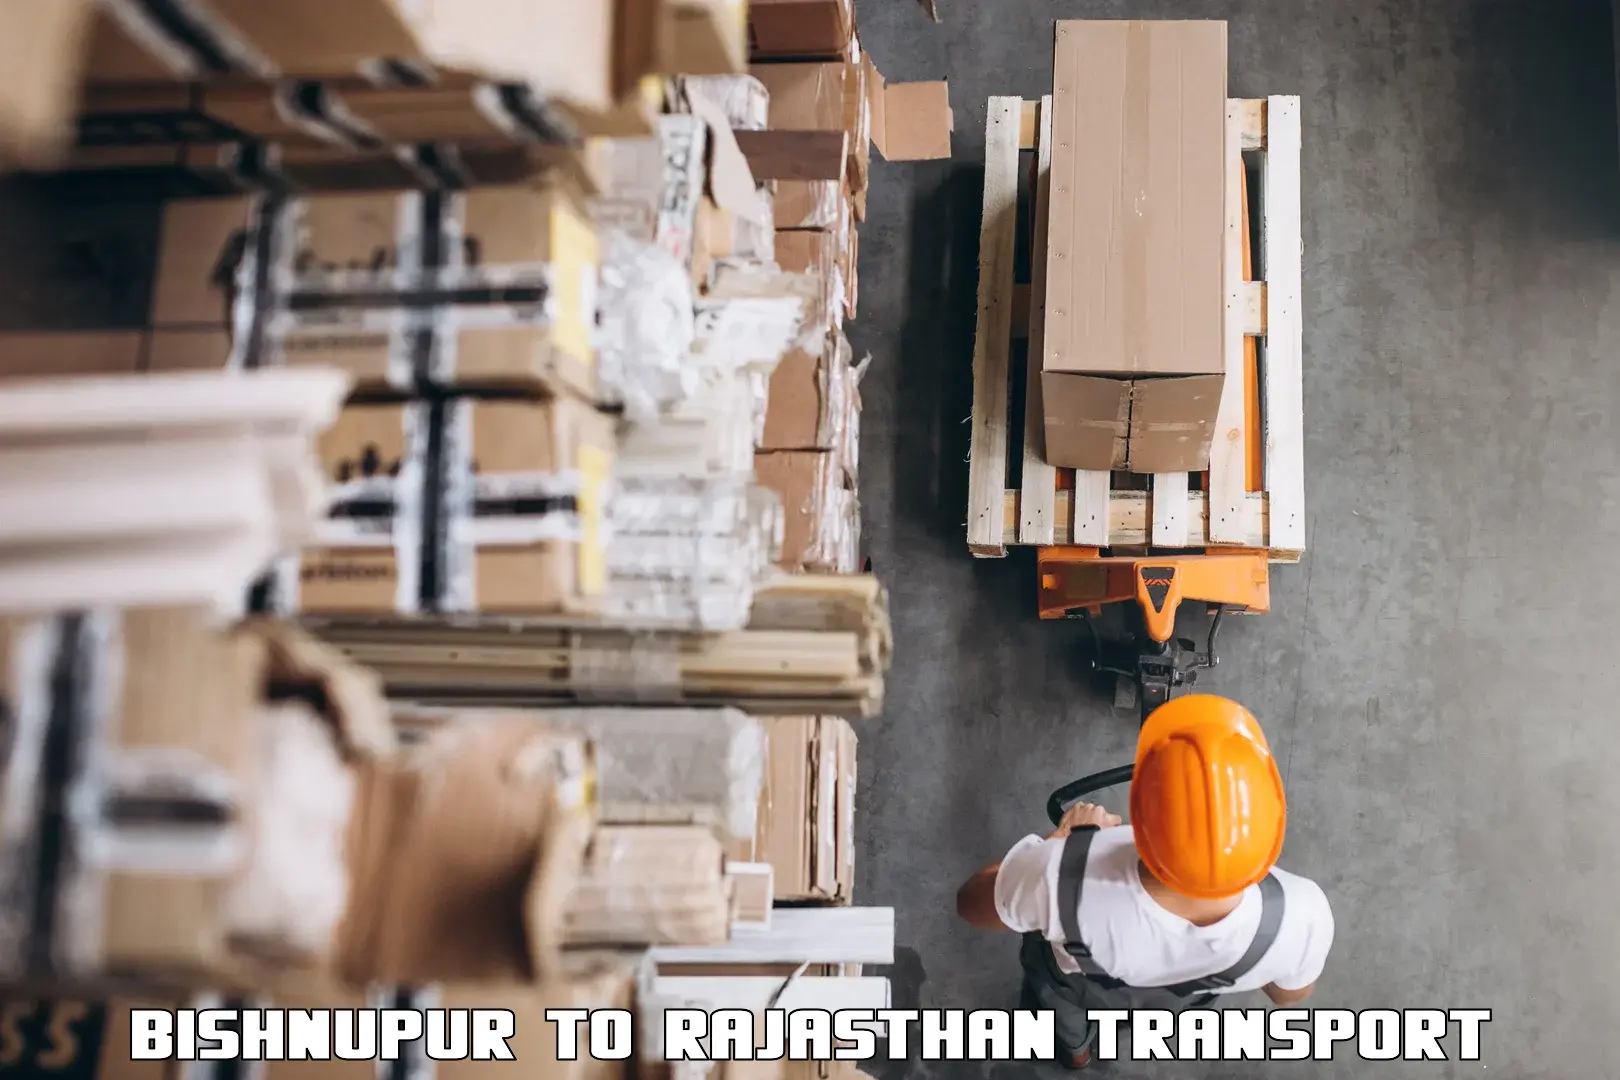 Daily parcel service transport Bishnupur to Banswara